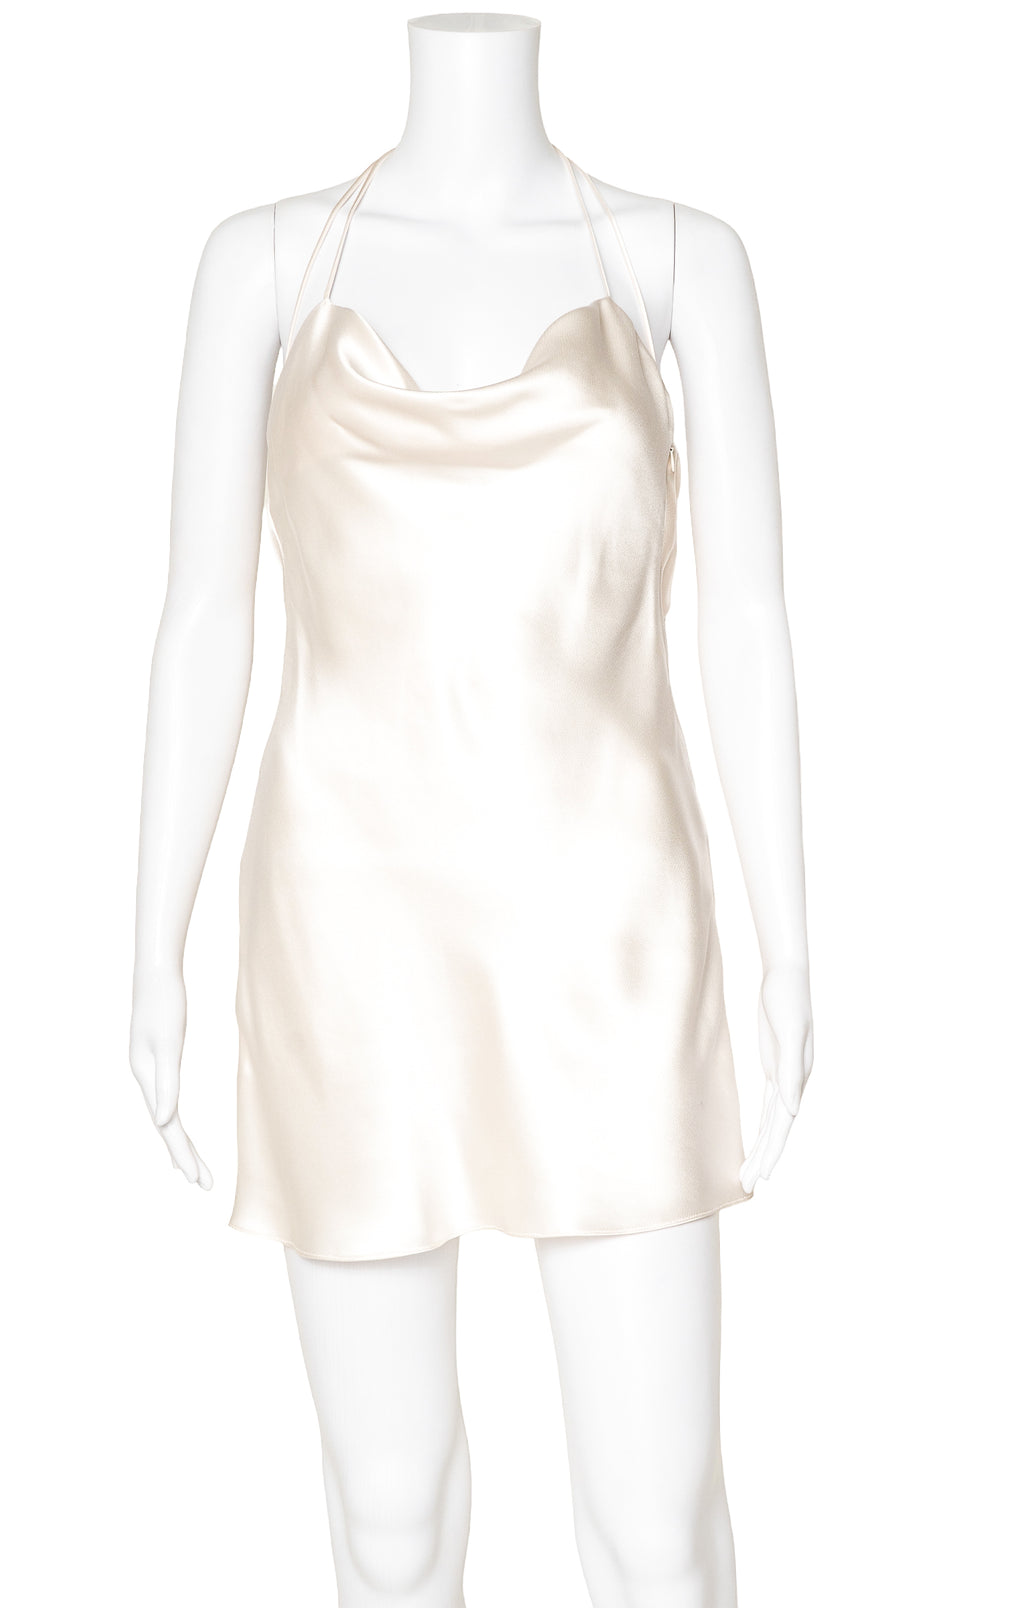 SAINT LAURENT Dress Size: FR 36 / Comparable to US 2-4